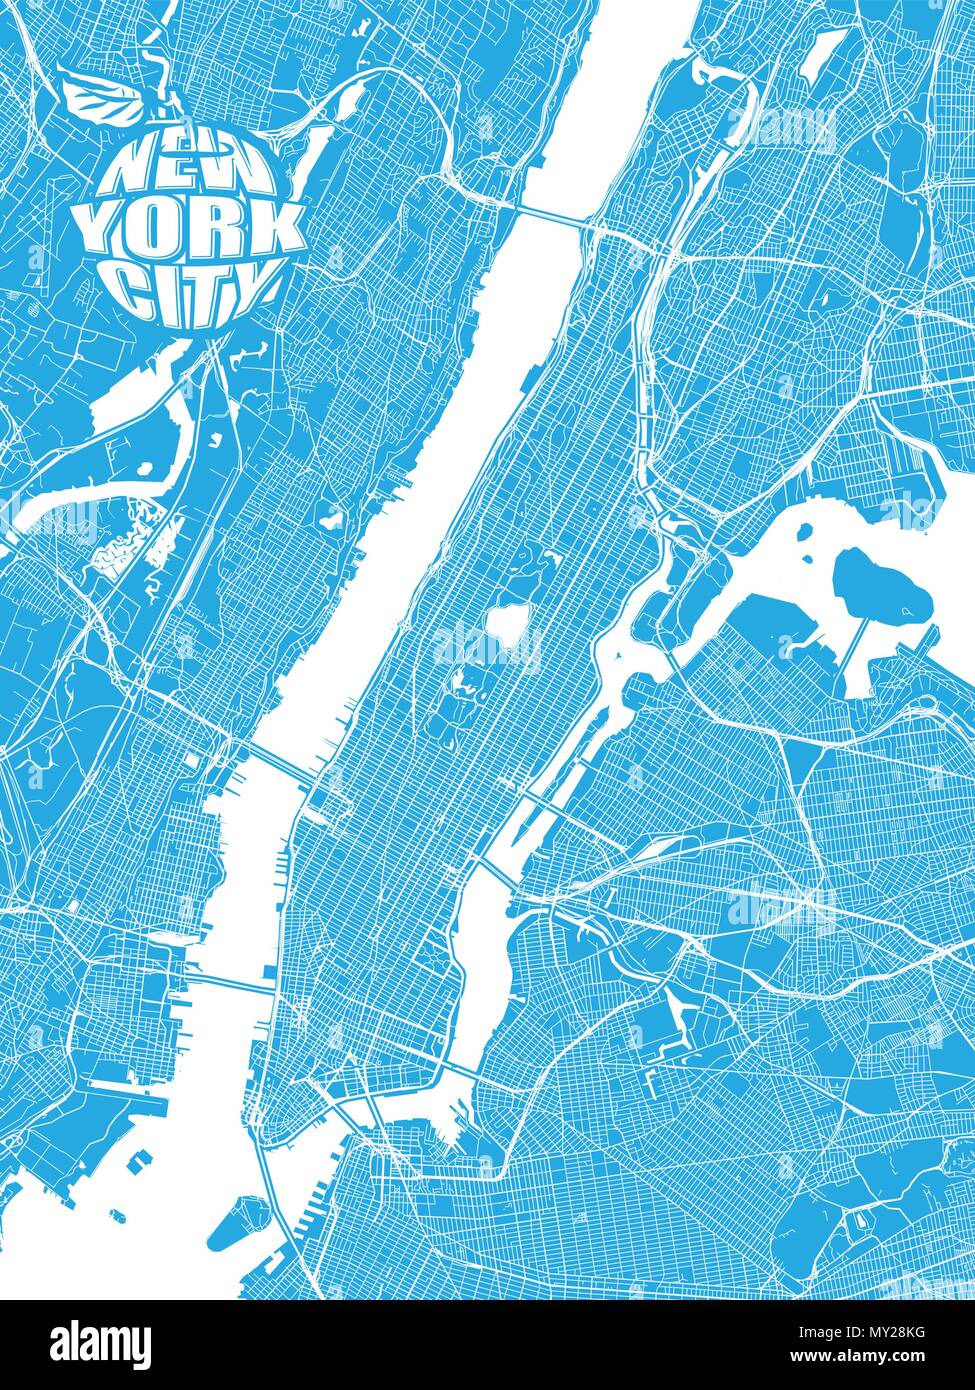 La carte bleue de la ville de New York avec le logo Apple. De manière détaillée, en version avec ponts et sans noms. NYC-logo Apple regroupés séparément. Illustration de Vecteur